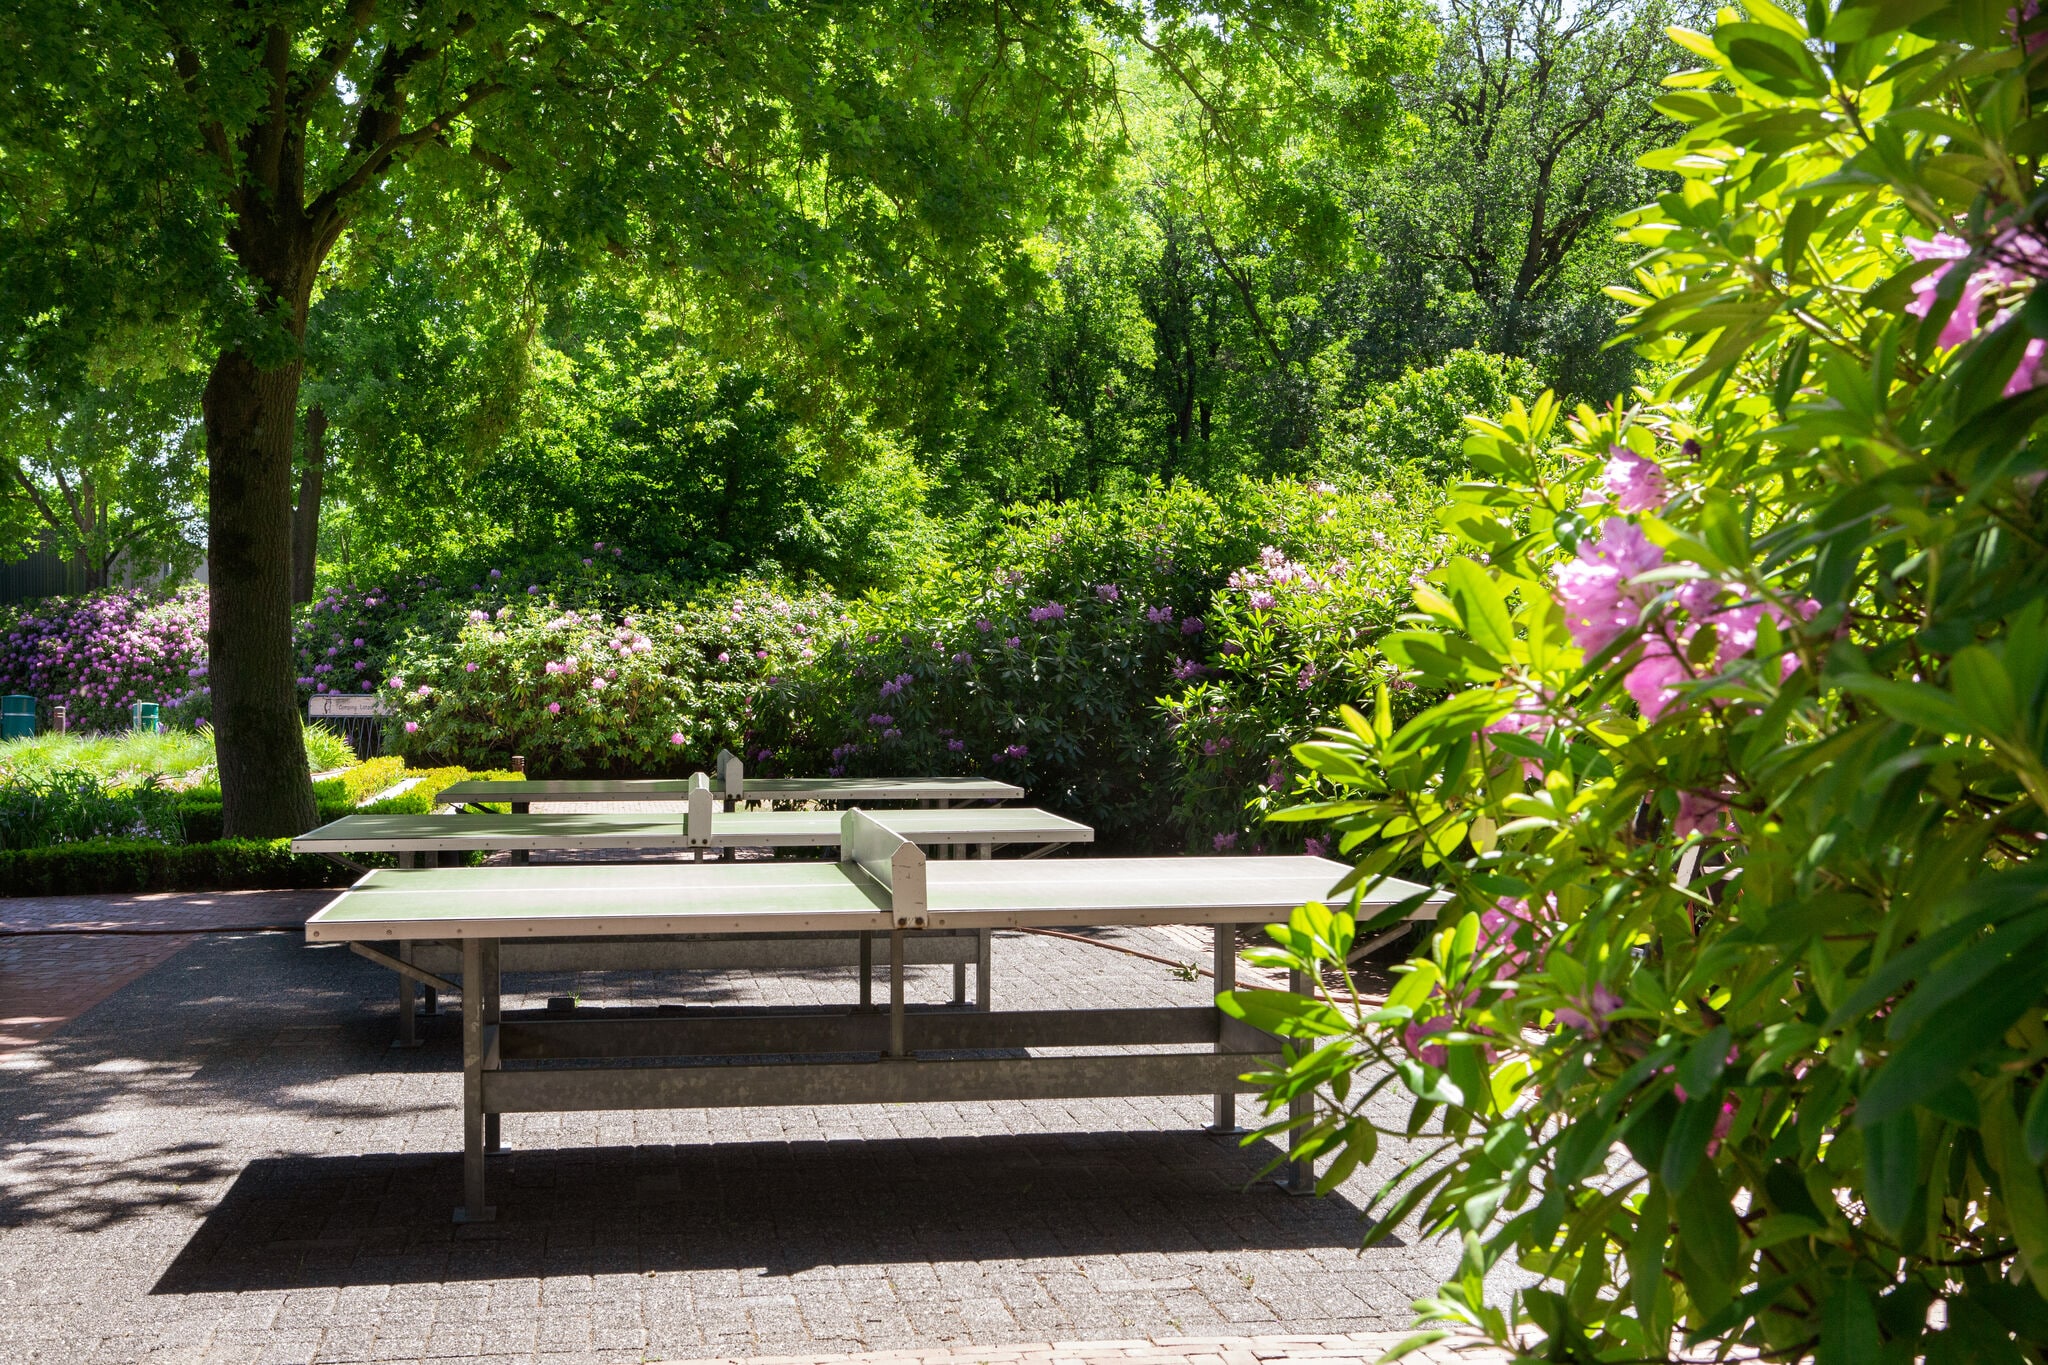 Lodge agréable avec une jolie terrasse situé dans un parc de vacances en Brabant